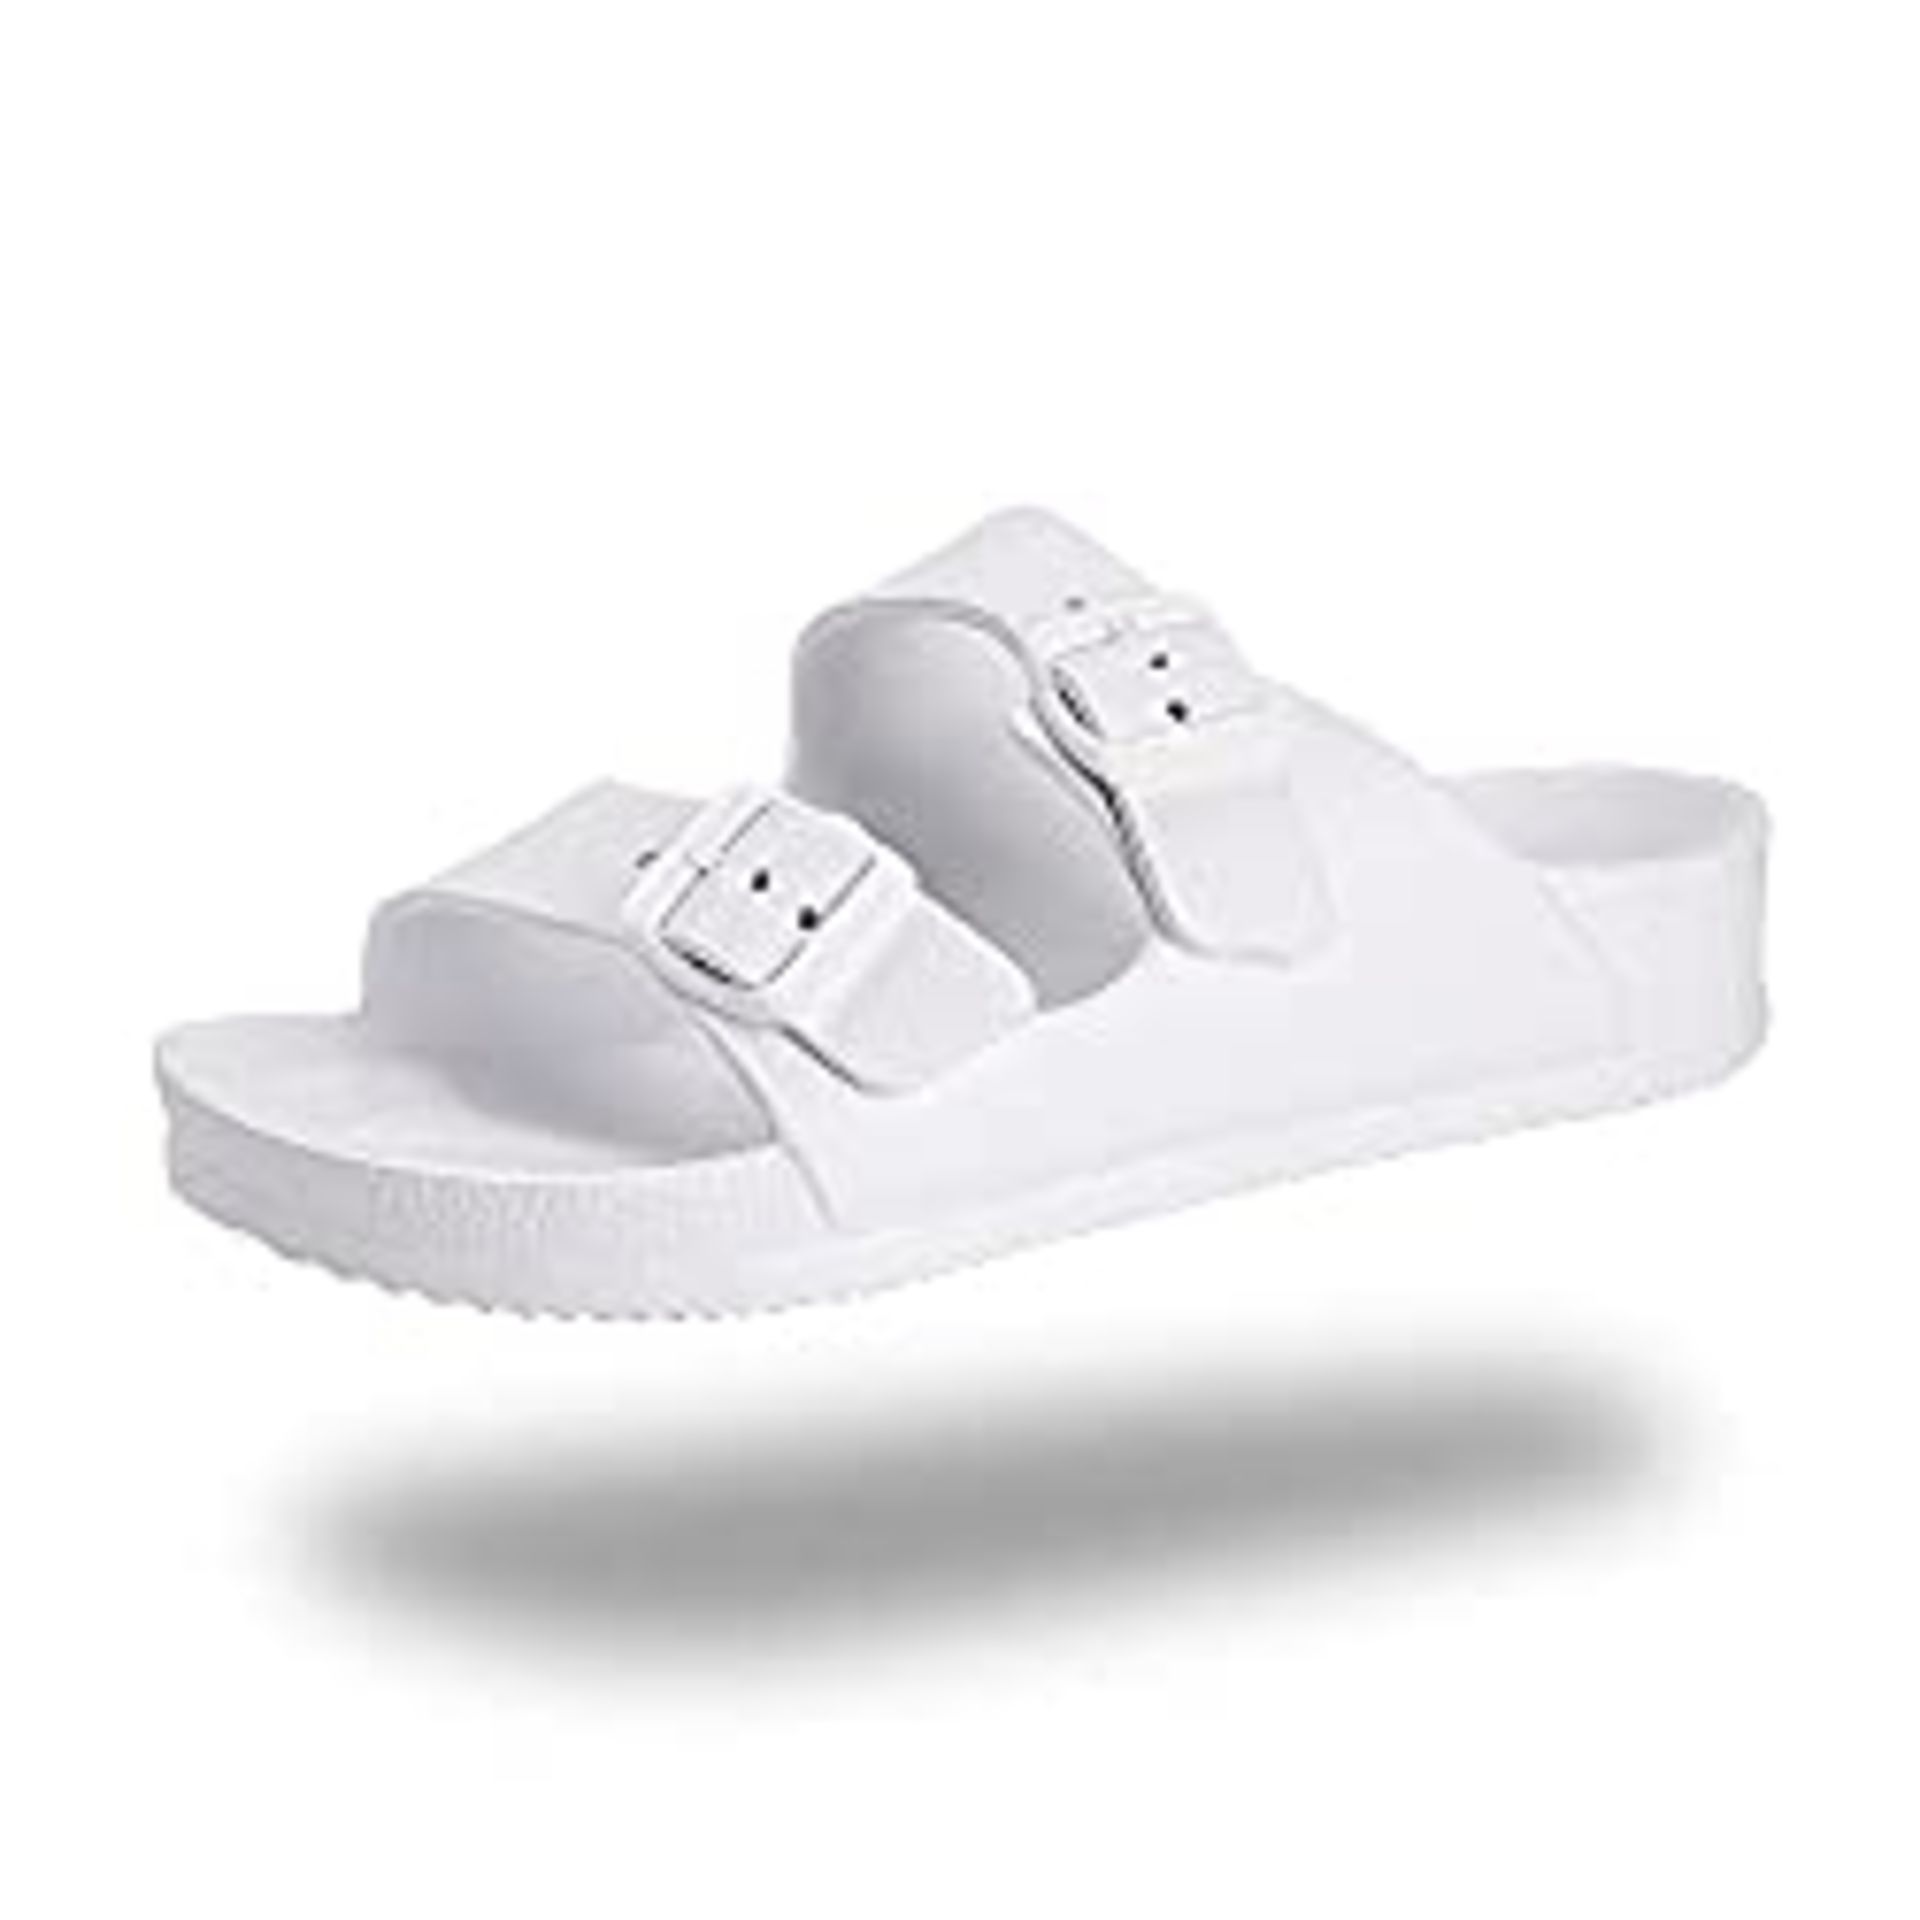 RRP £6.98 Womens Flat Sandals Ladies Summer Flip Flops EVA Slippers